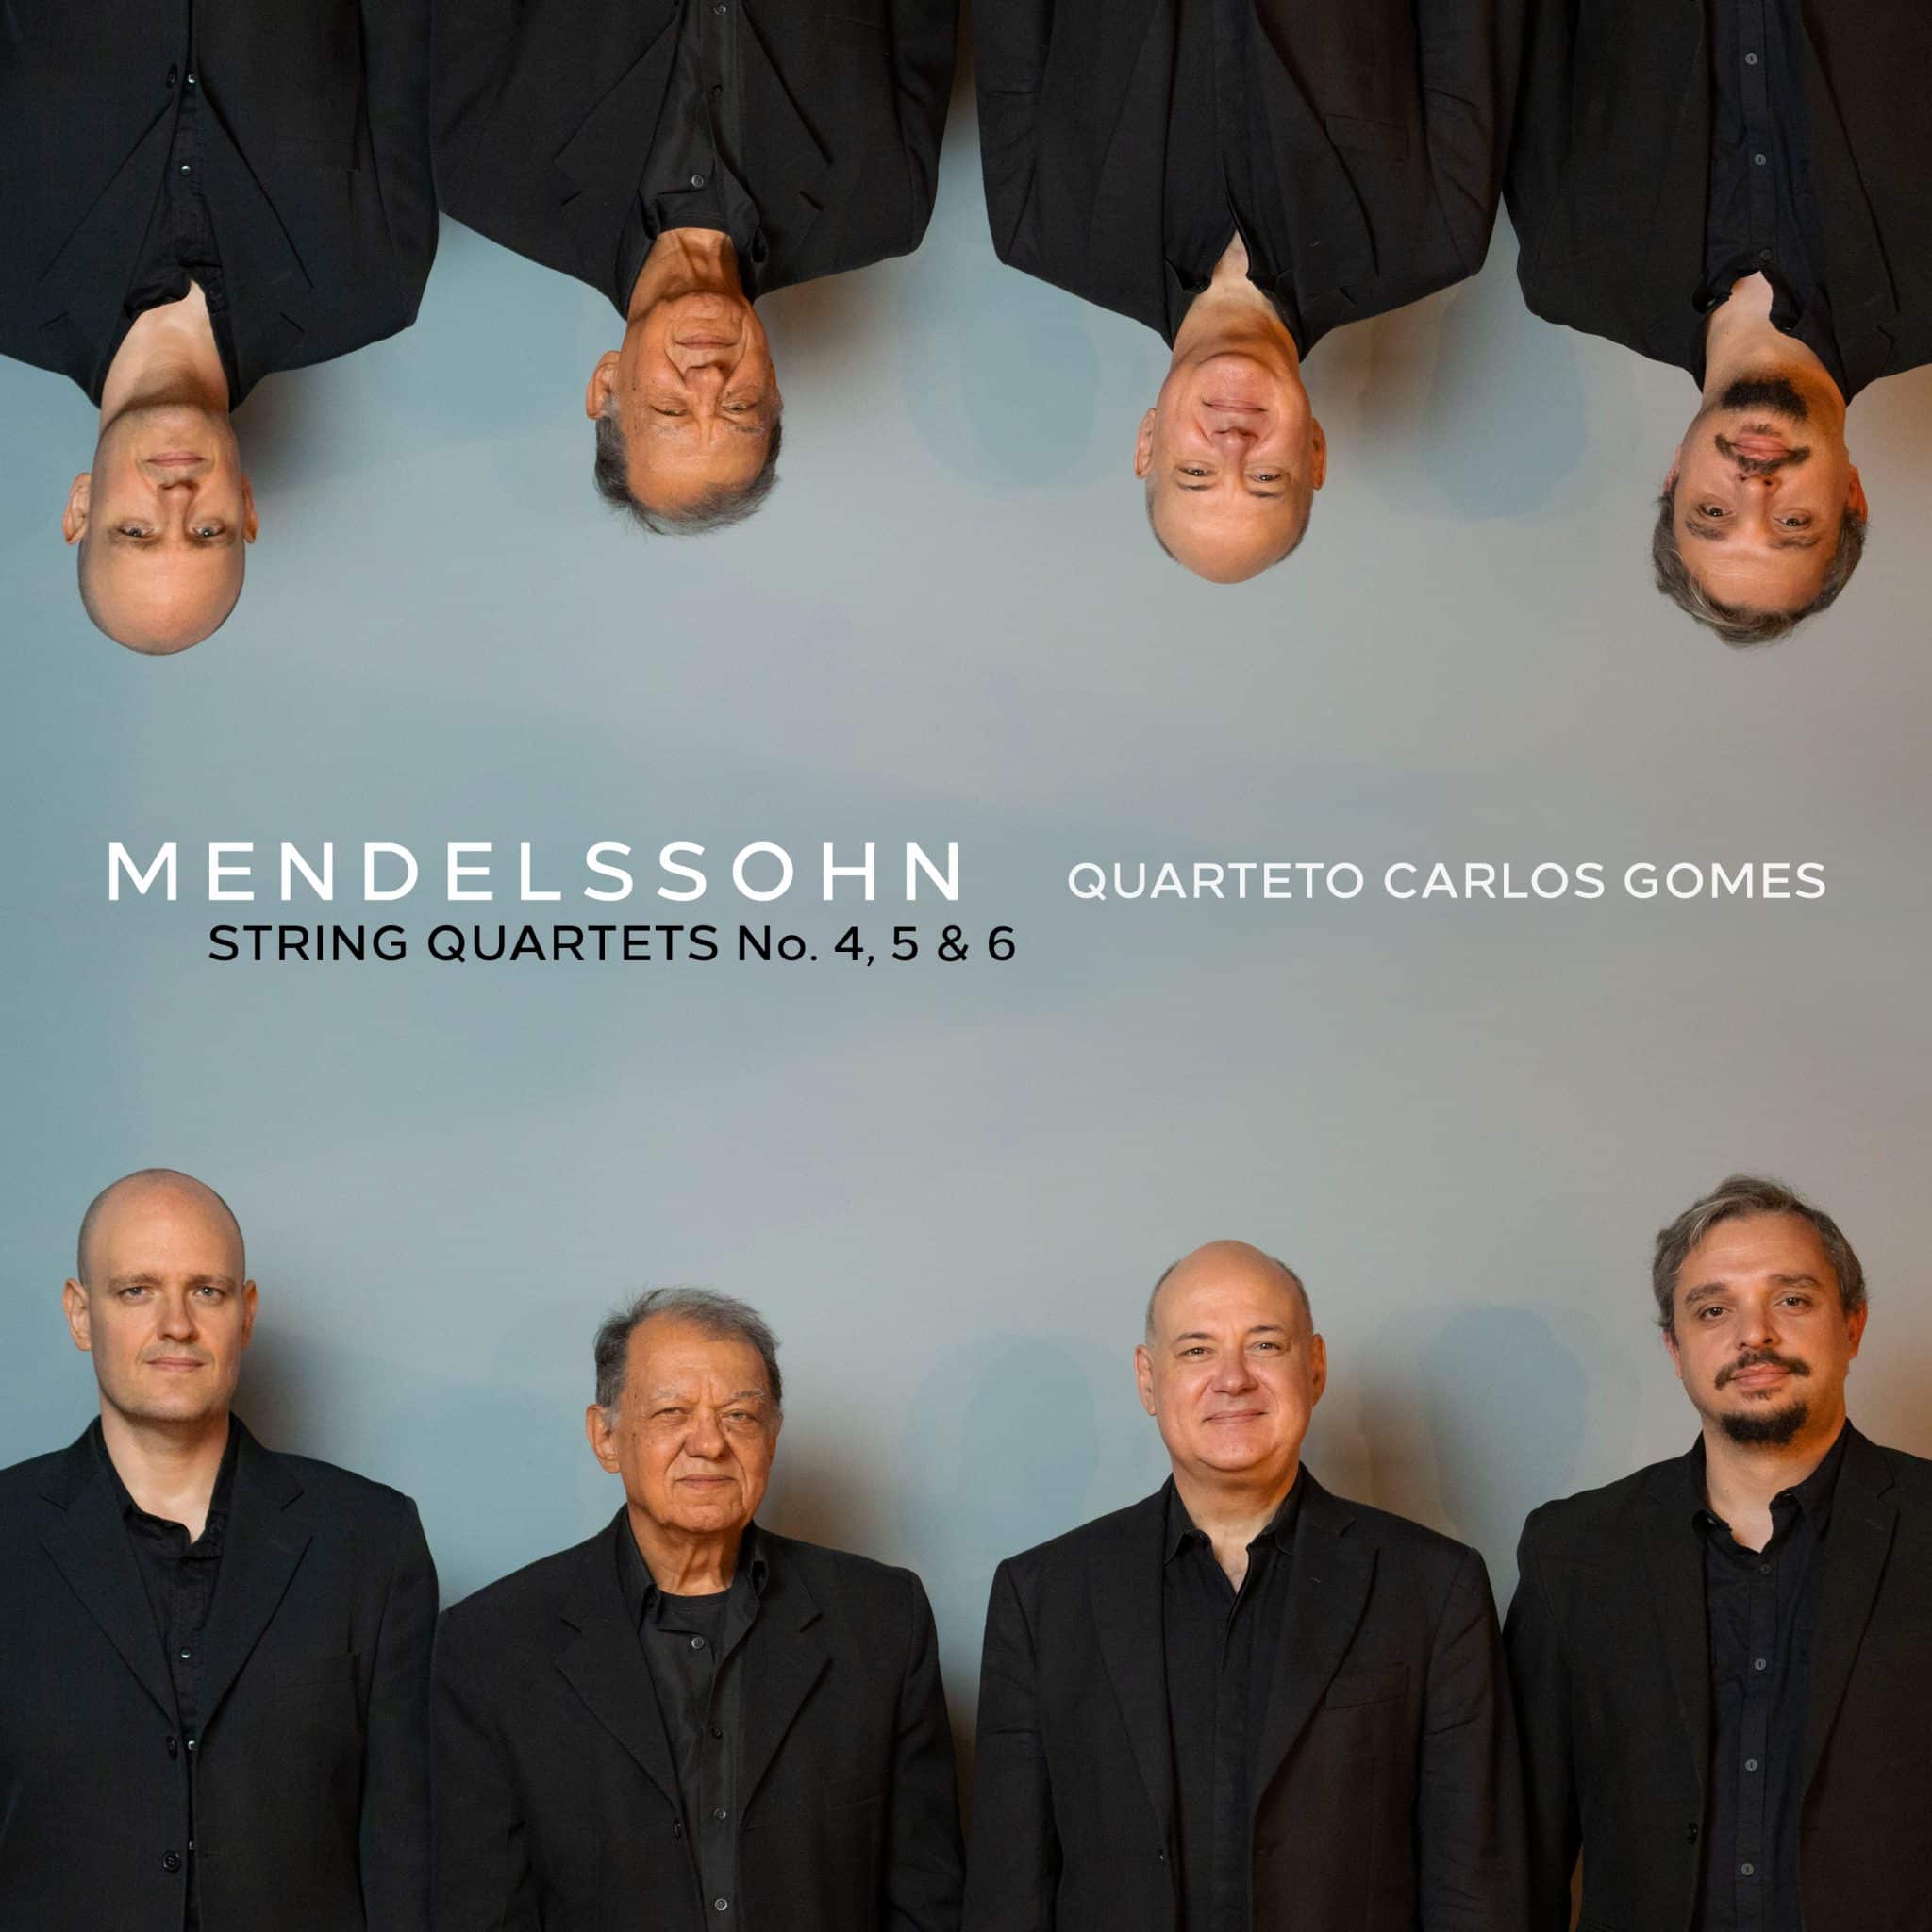 revistaprosaversoearte.com - Quarteto Carlos Gomes lança álbum 'Mendelssohn: String Quartets No. 4, 5 & 6'